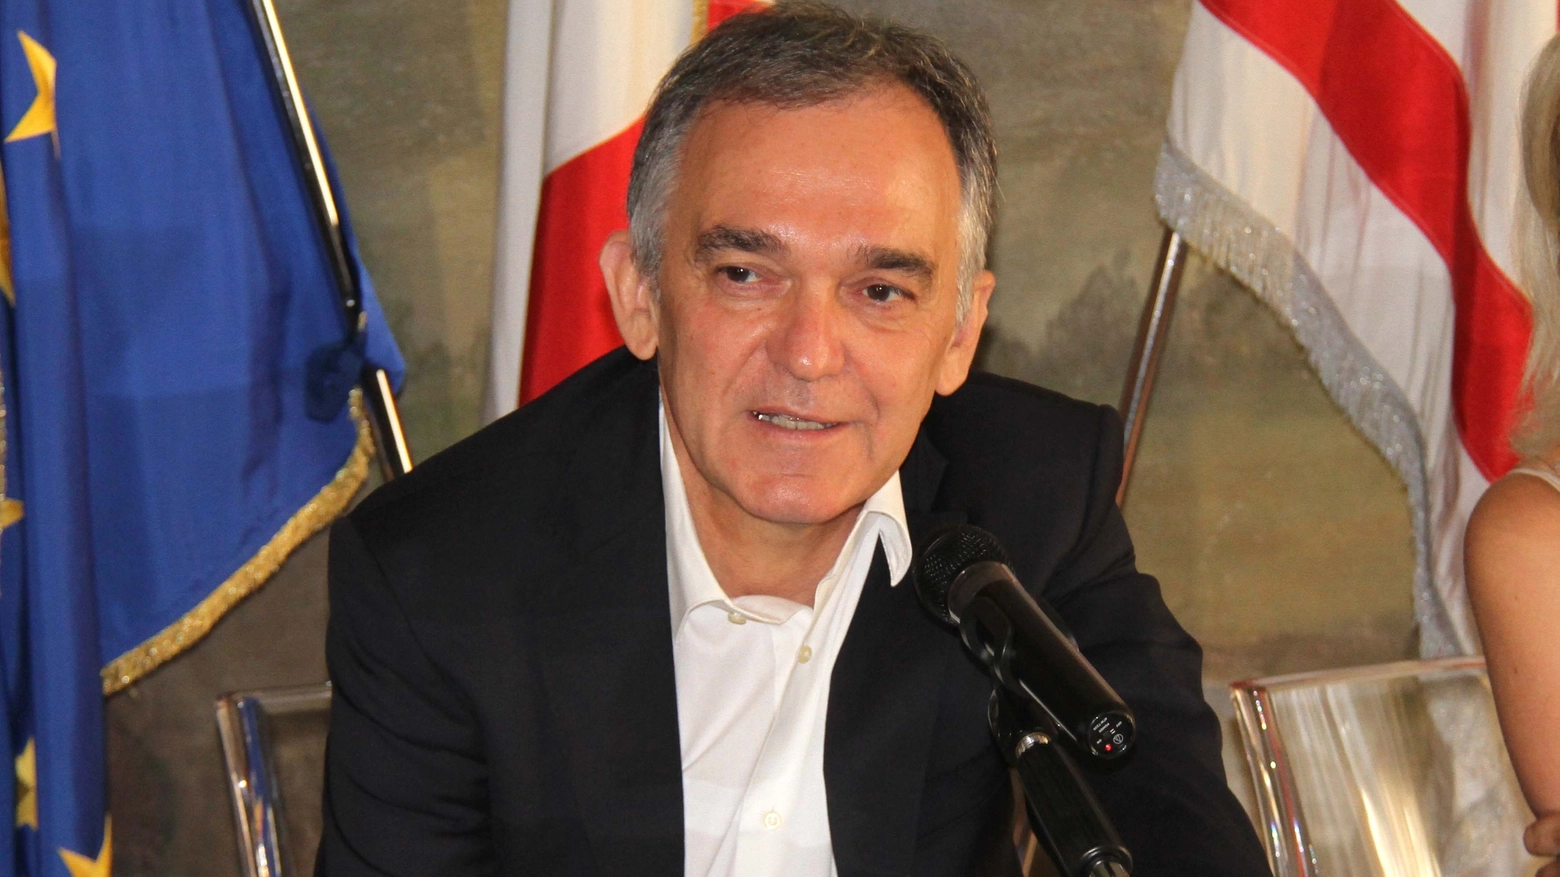 Il presidente della Regione Toscana Enrico Rossi